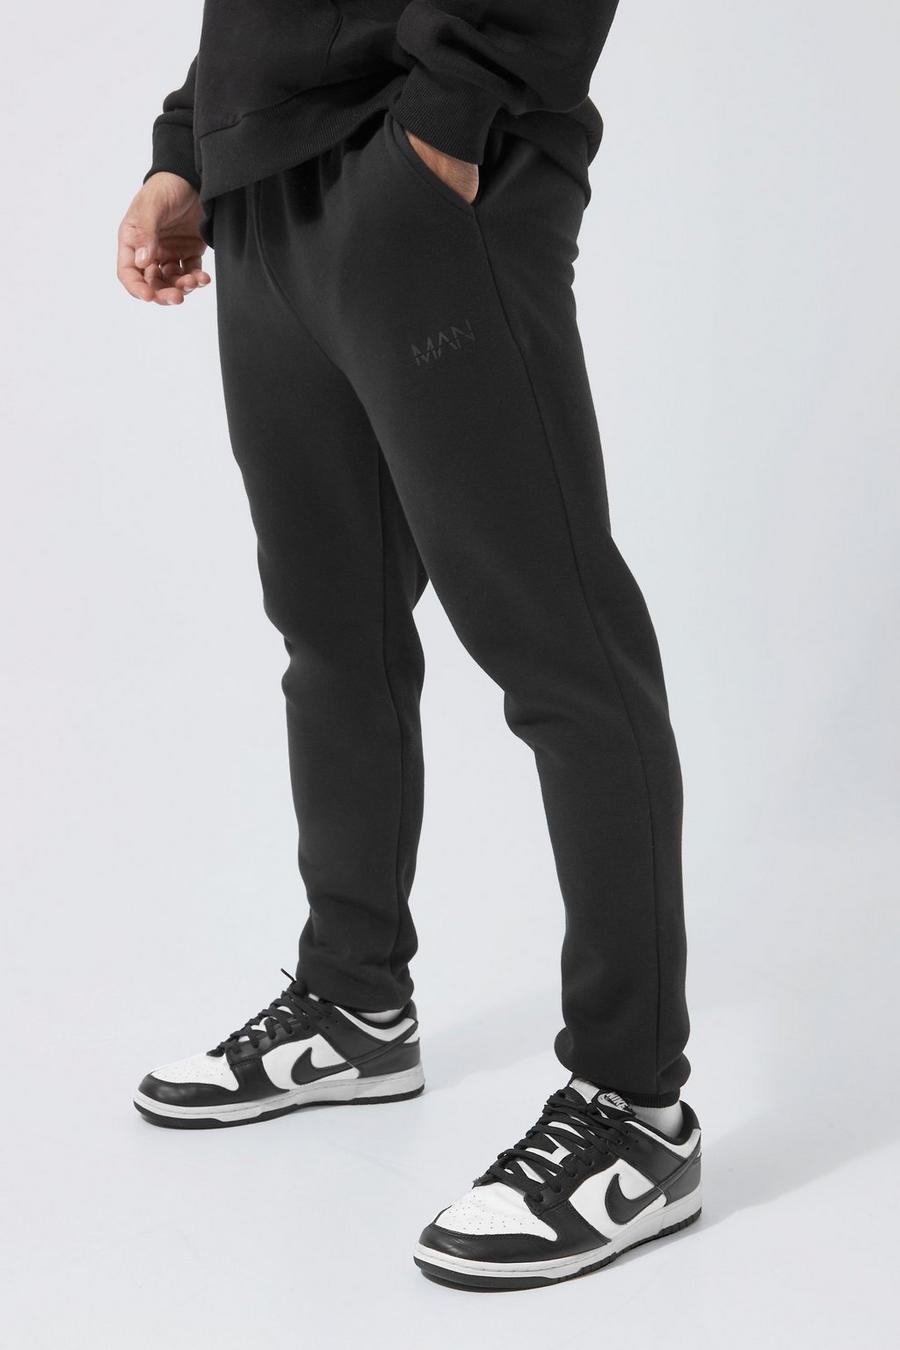 Pantaloni tuta Skinny Fit a blocchi di colore con striscia Man a caratteri romani, Black nero